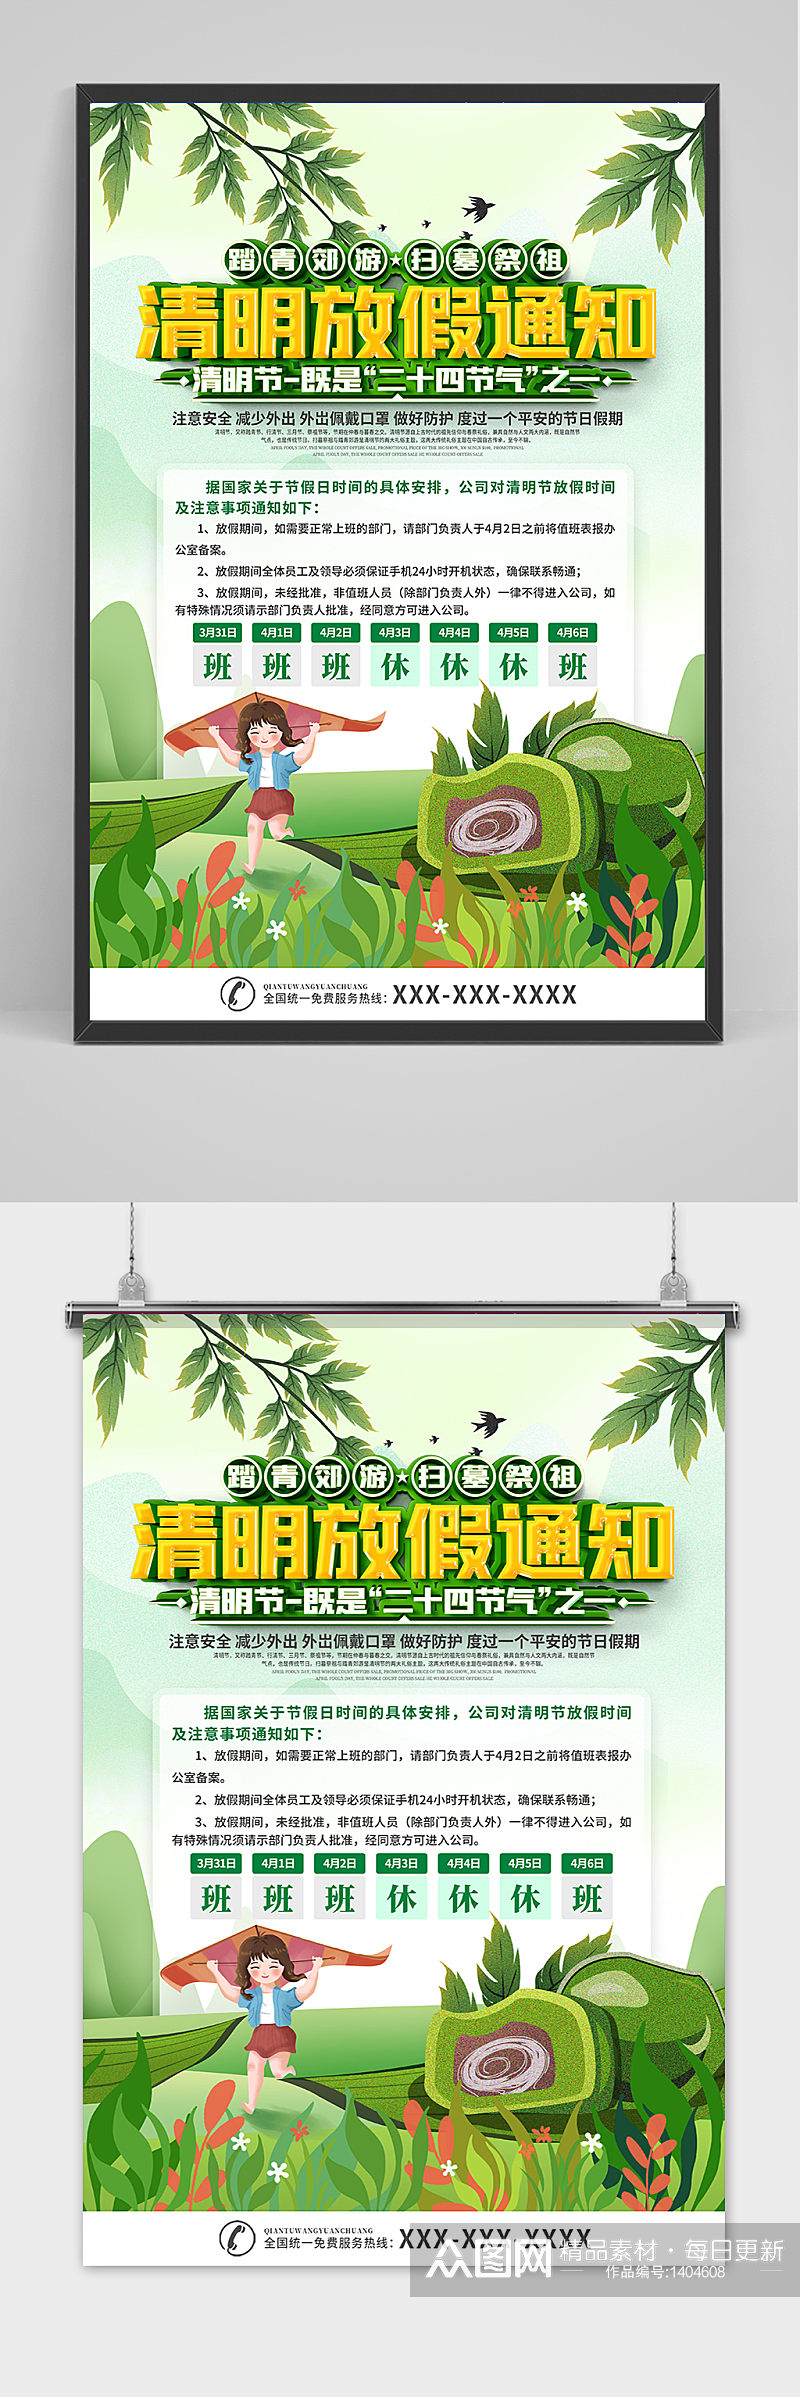 创意中国风清明节放假通知海报素材